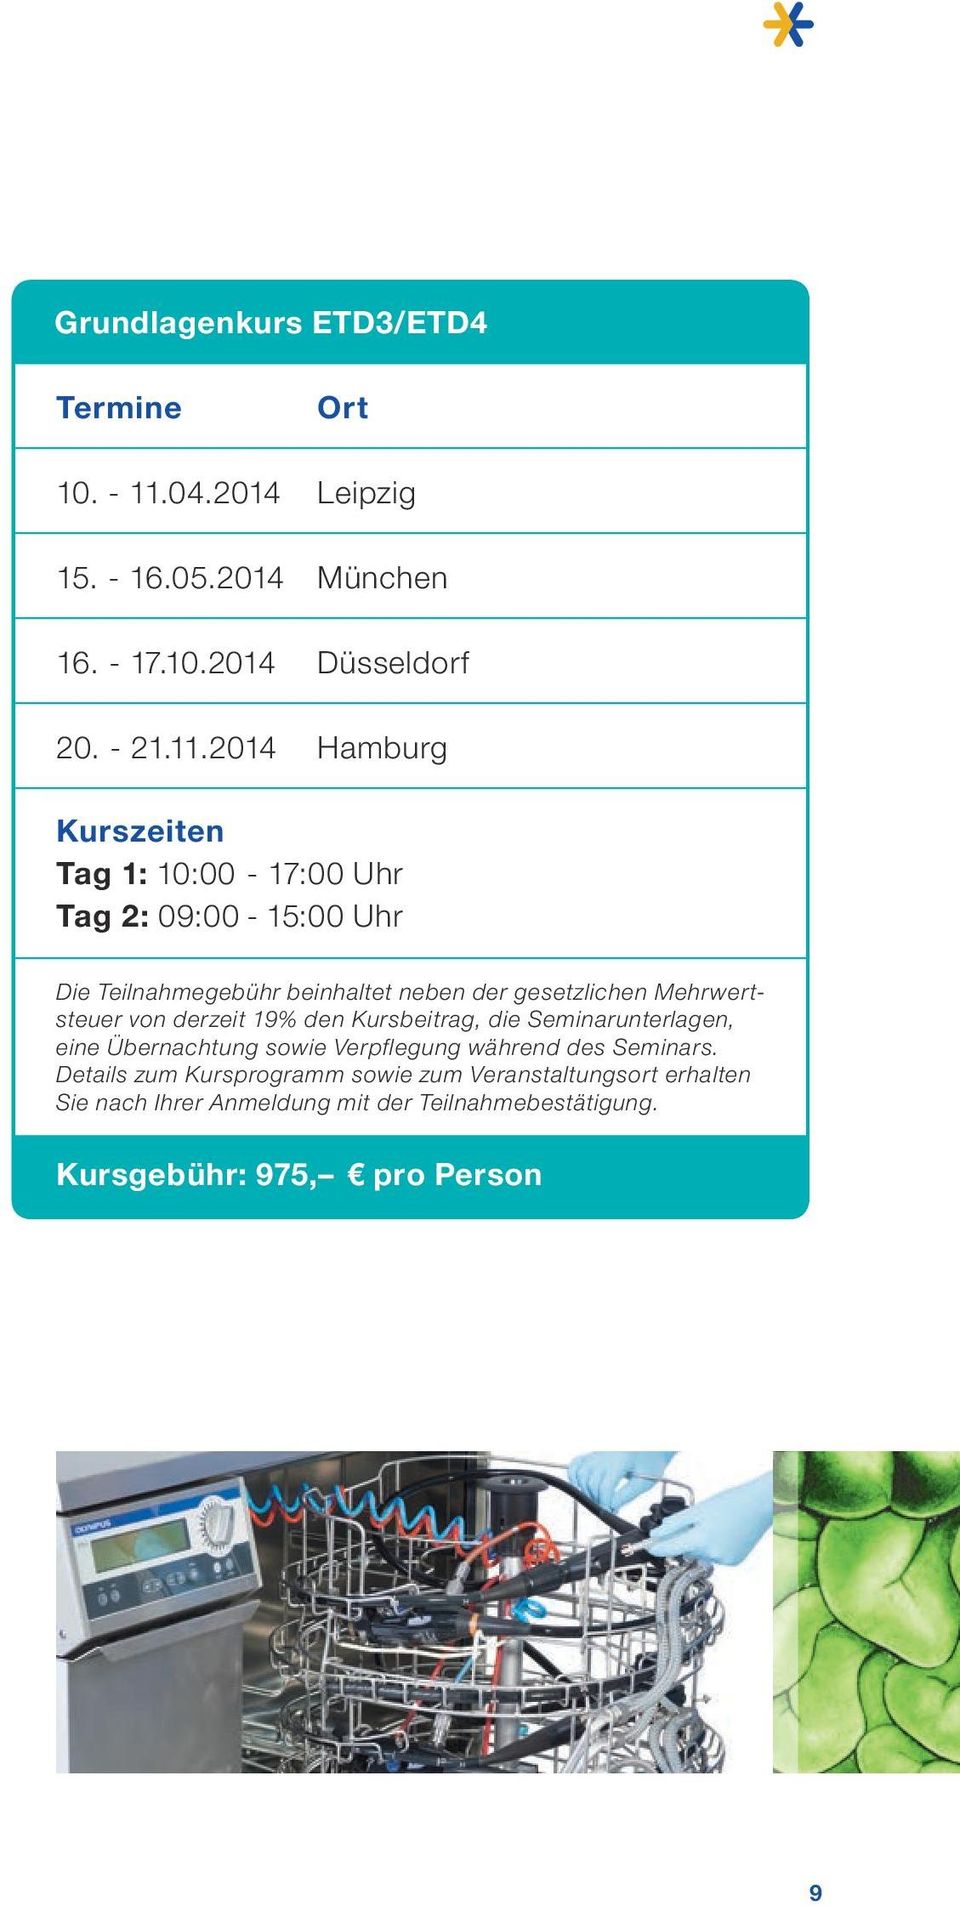 2014 Ort Leipzig München Düsseldorf Hamburg Kurszeiten Tag 1: 10:00-17:00 Uhr Tag 2: 09:00-15:00 Uhr Die Teilnahmegebühr beinhaltet